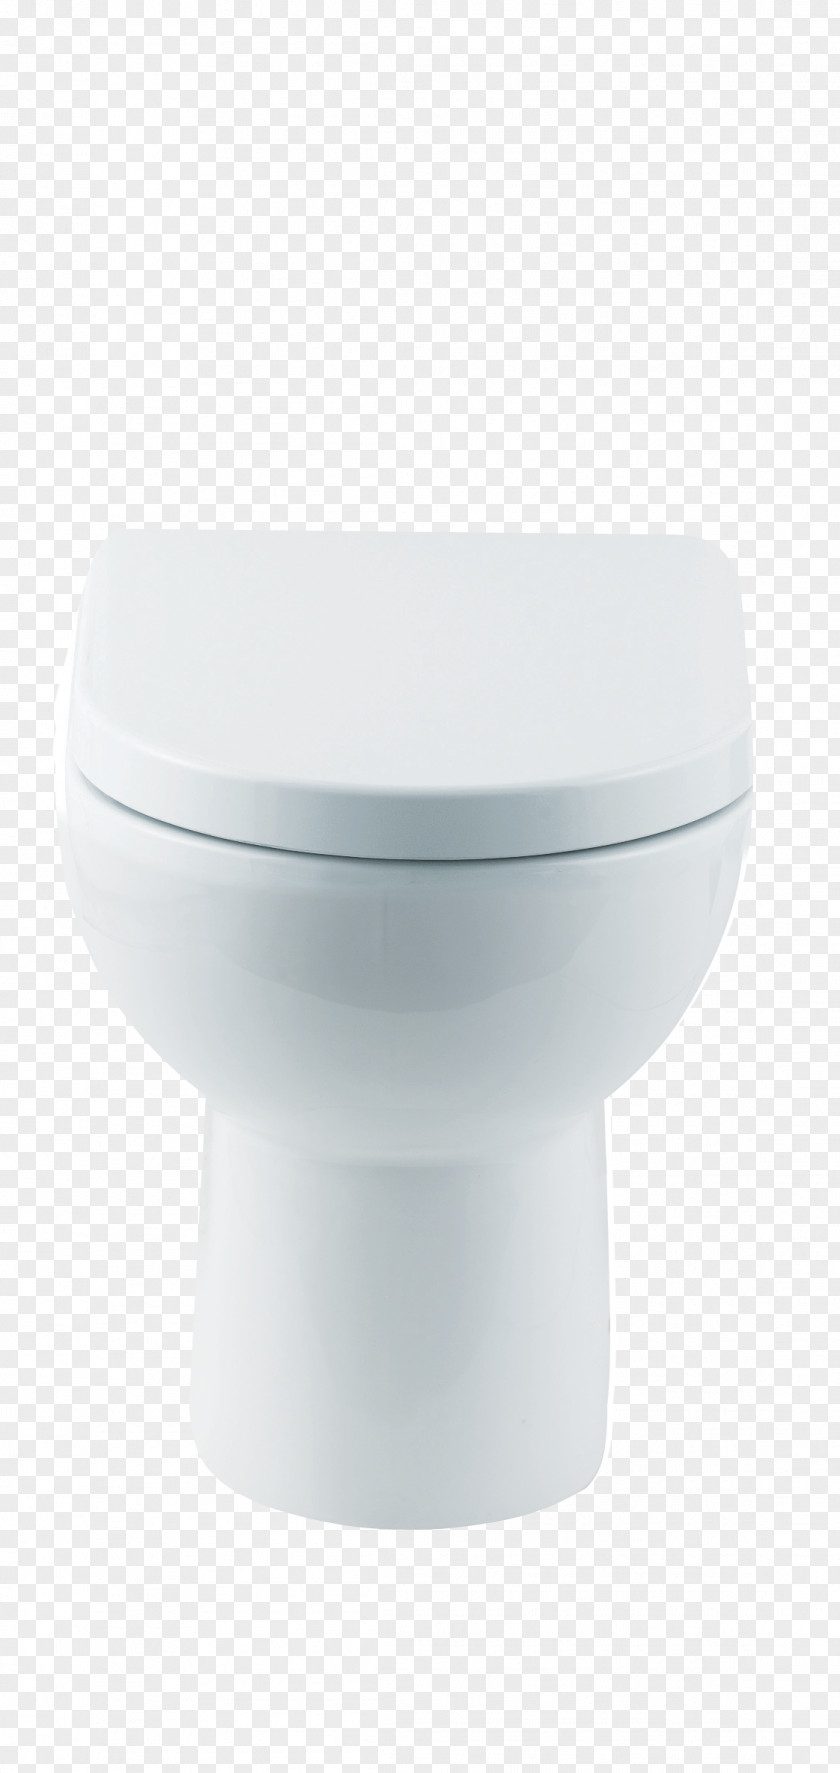 Toilet Seat Tap Bathroom Sink PNG